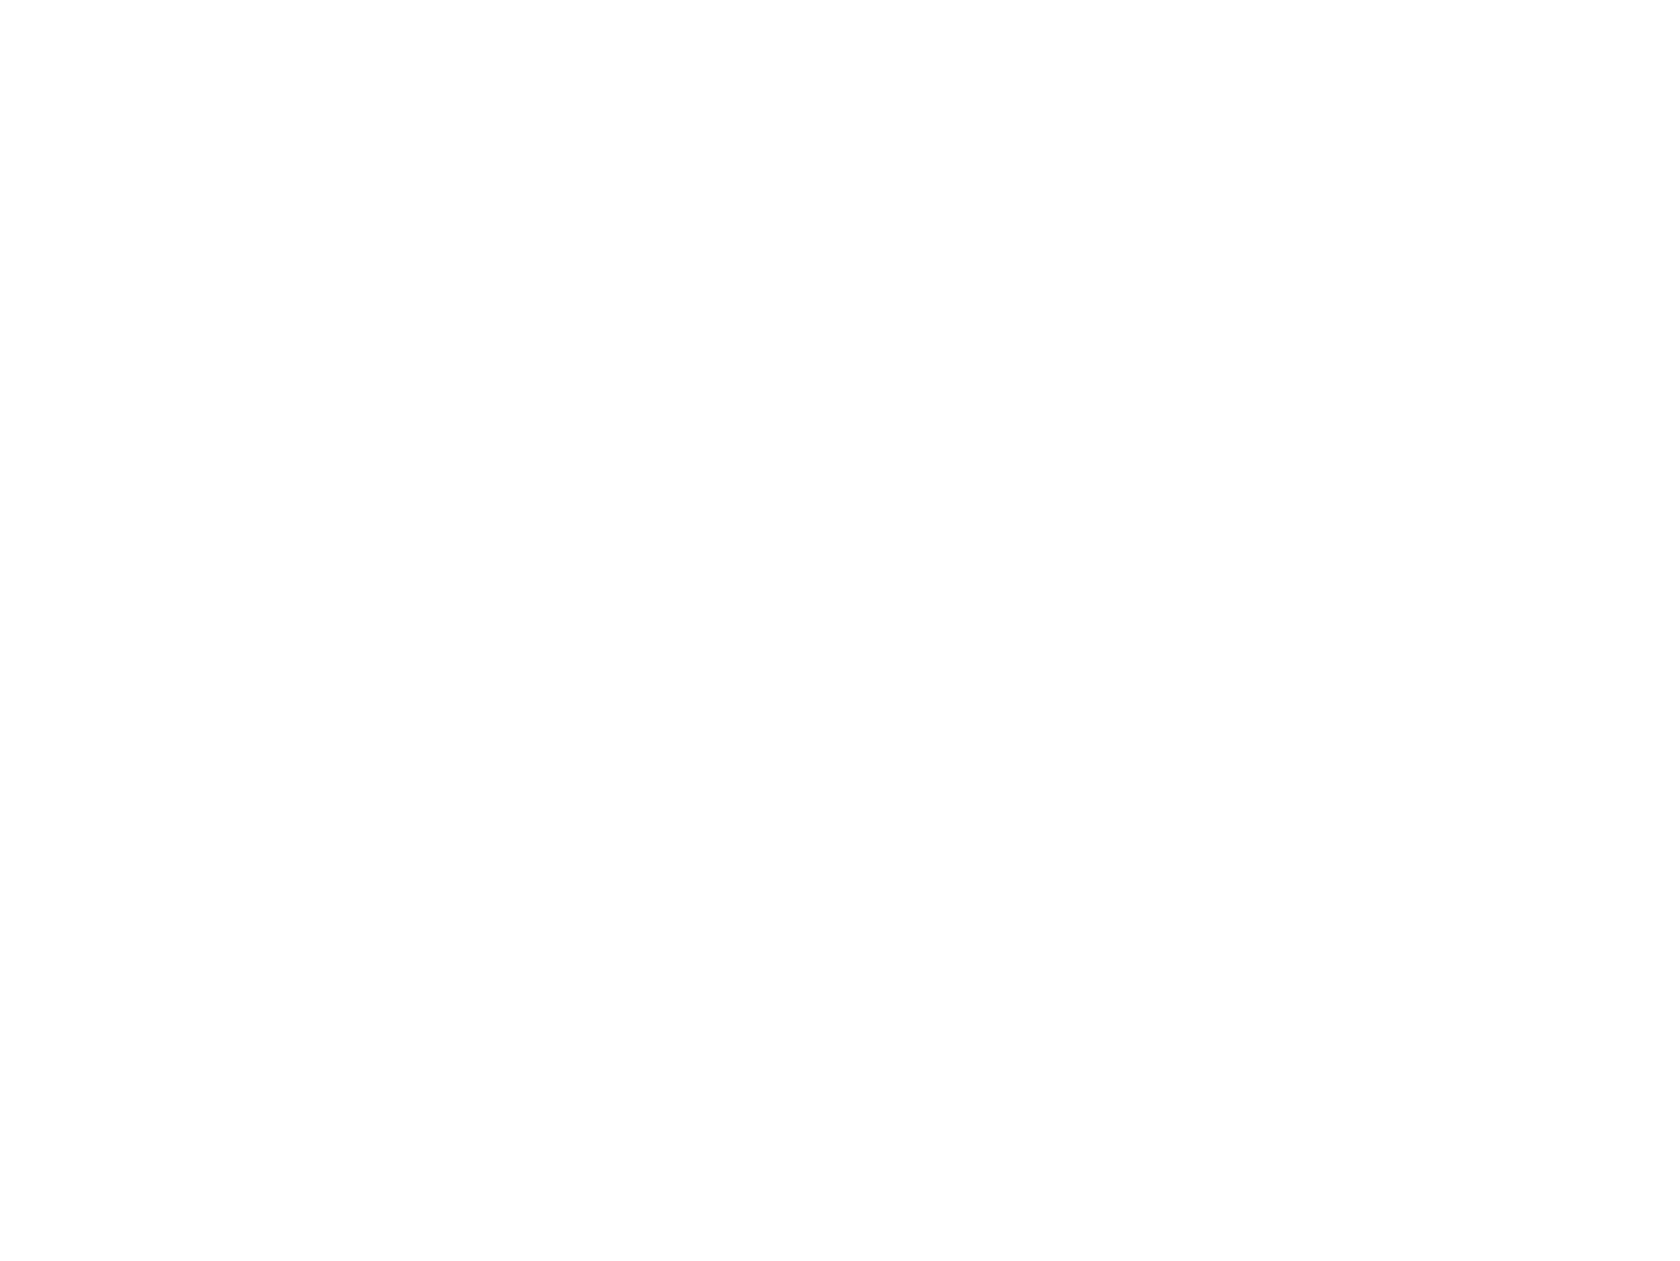 Ламповые часы на индикаторах ИН-12. Корпус изготовлен из массива клена. Передняя панель часов покрыта натуральным черным шпоном мореного эвкалипта